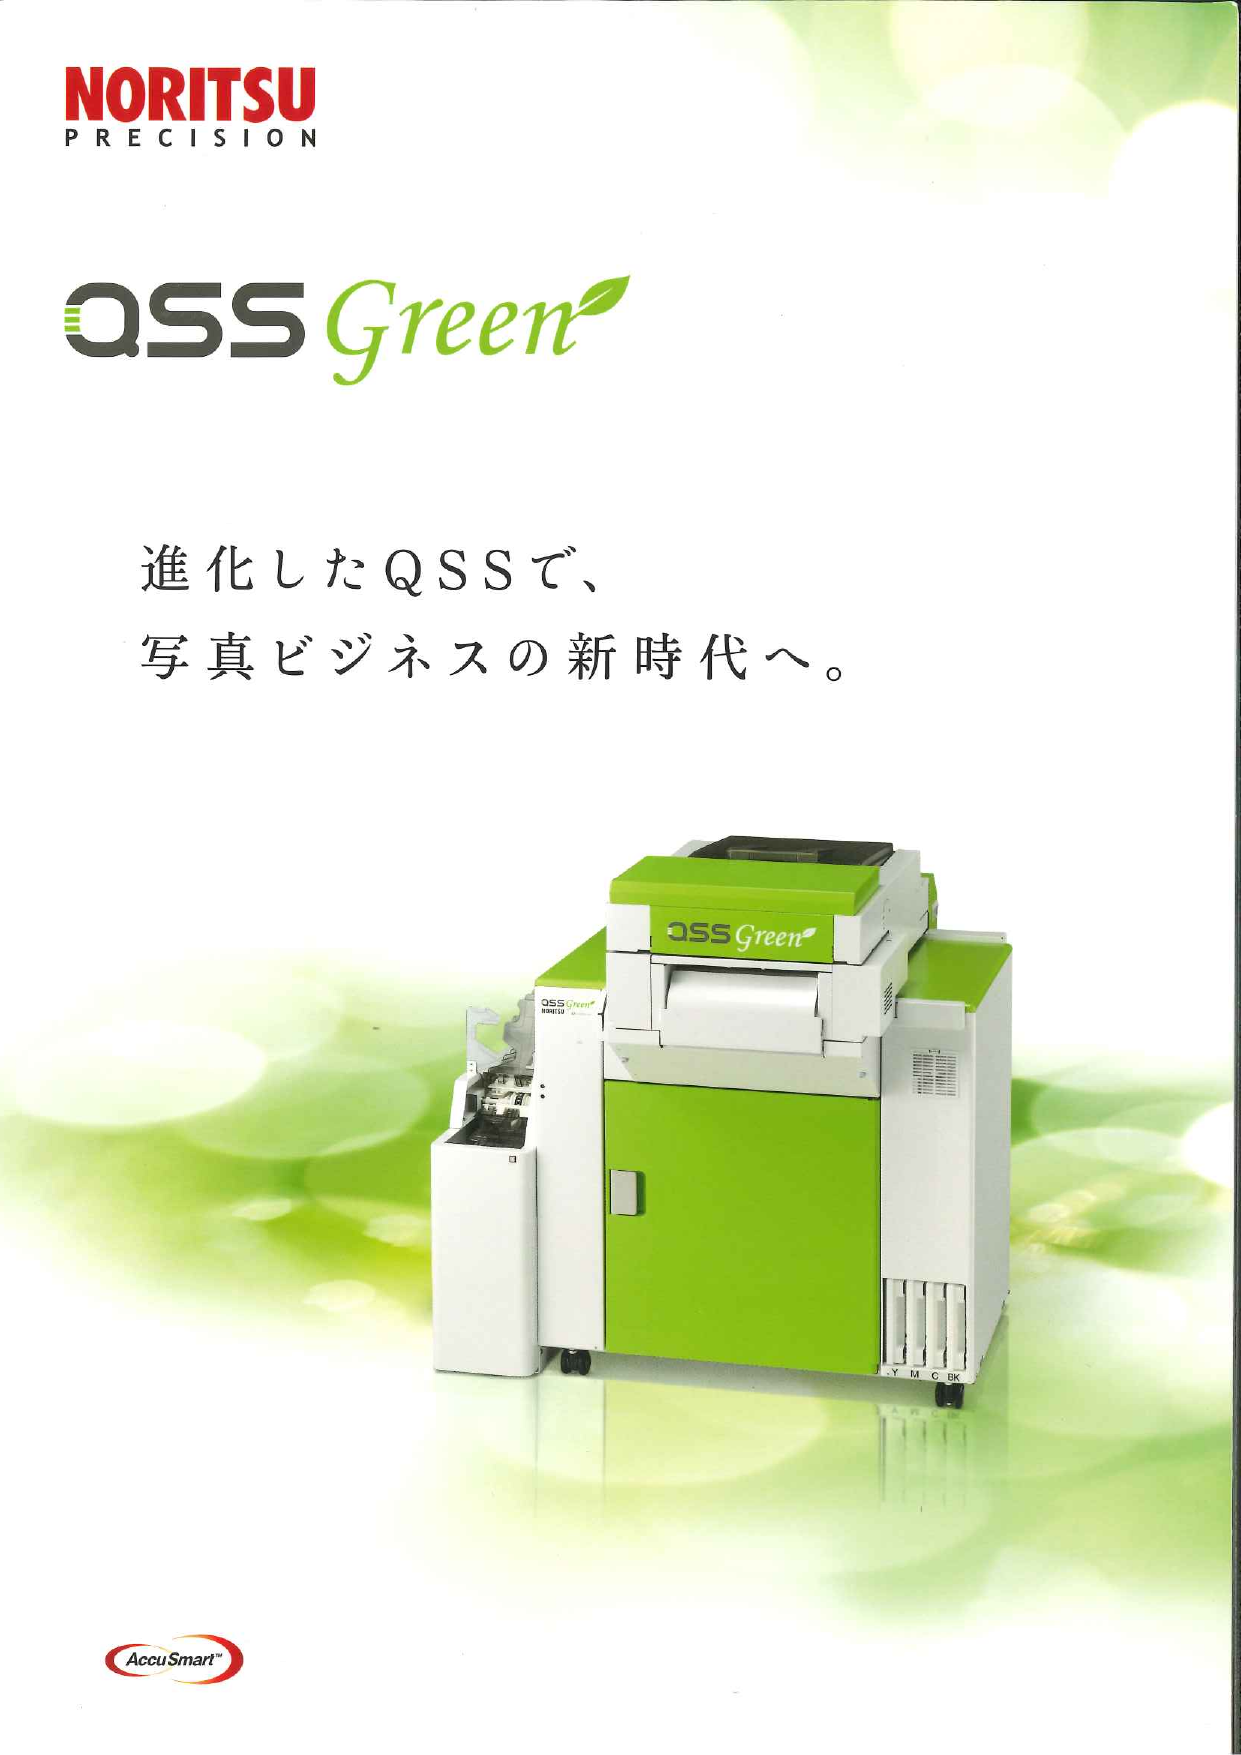 インクジェットプリンター ドライプリンター QSS Green（ノーリツプレシジョン株式会社）のカタログ無料ダウンロード Apérza  Catalog（アペルザカタログ） ものづくり産業向けカタログサイト